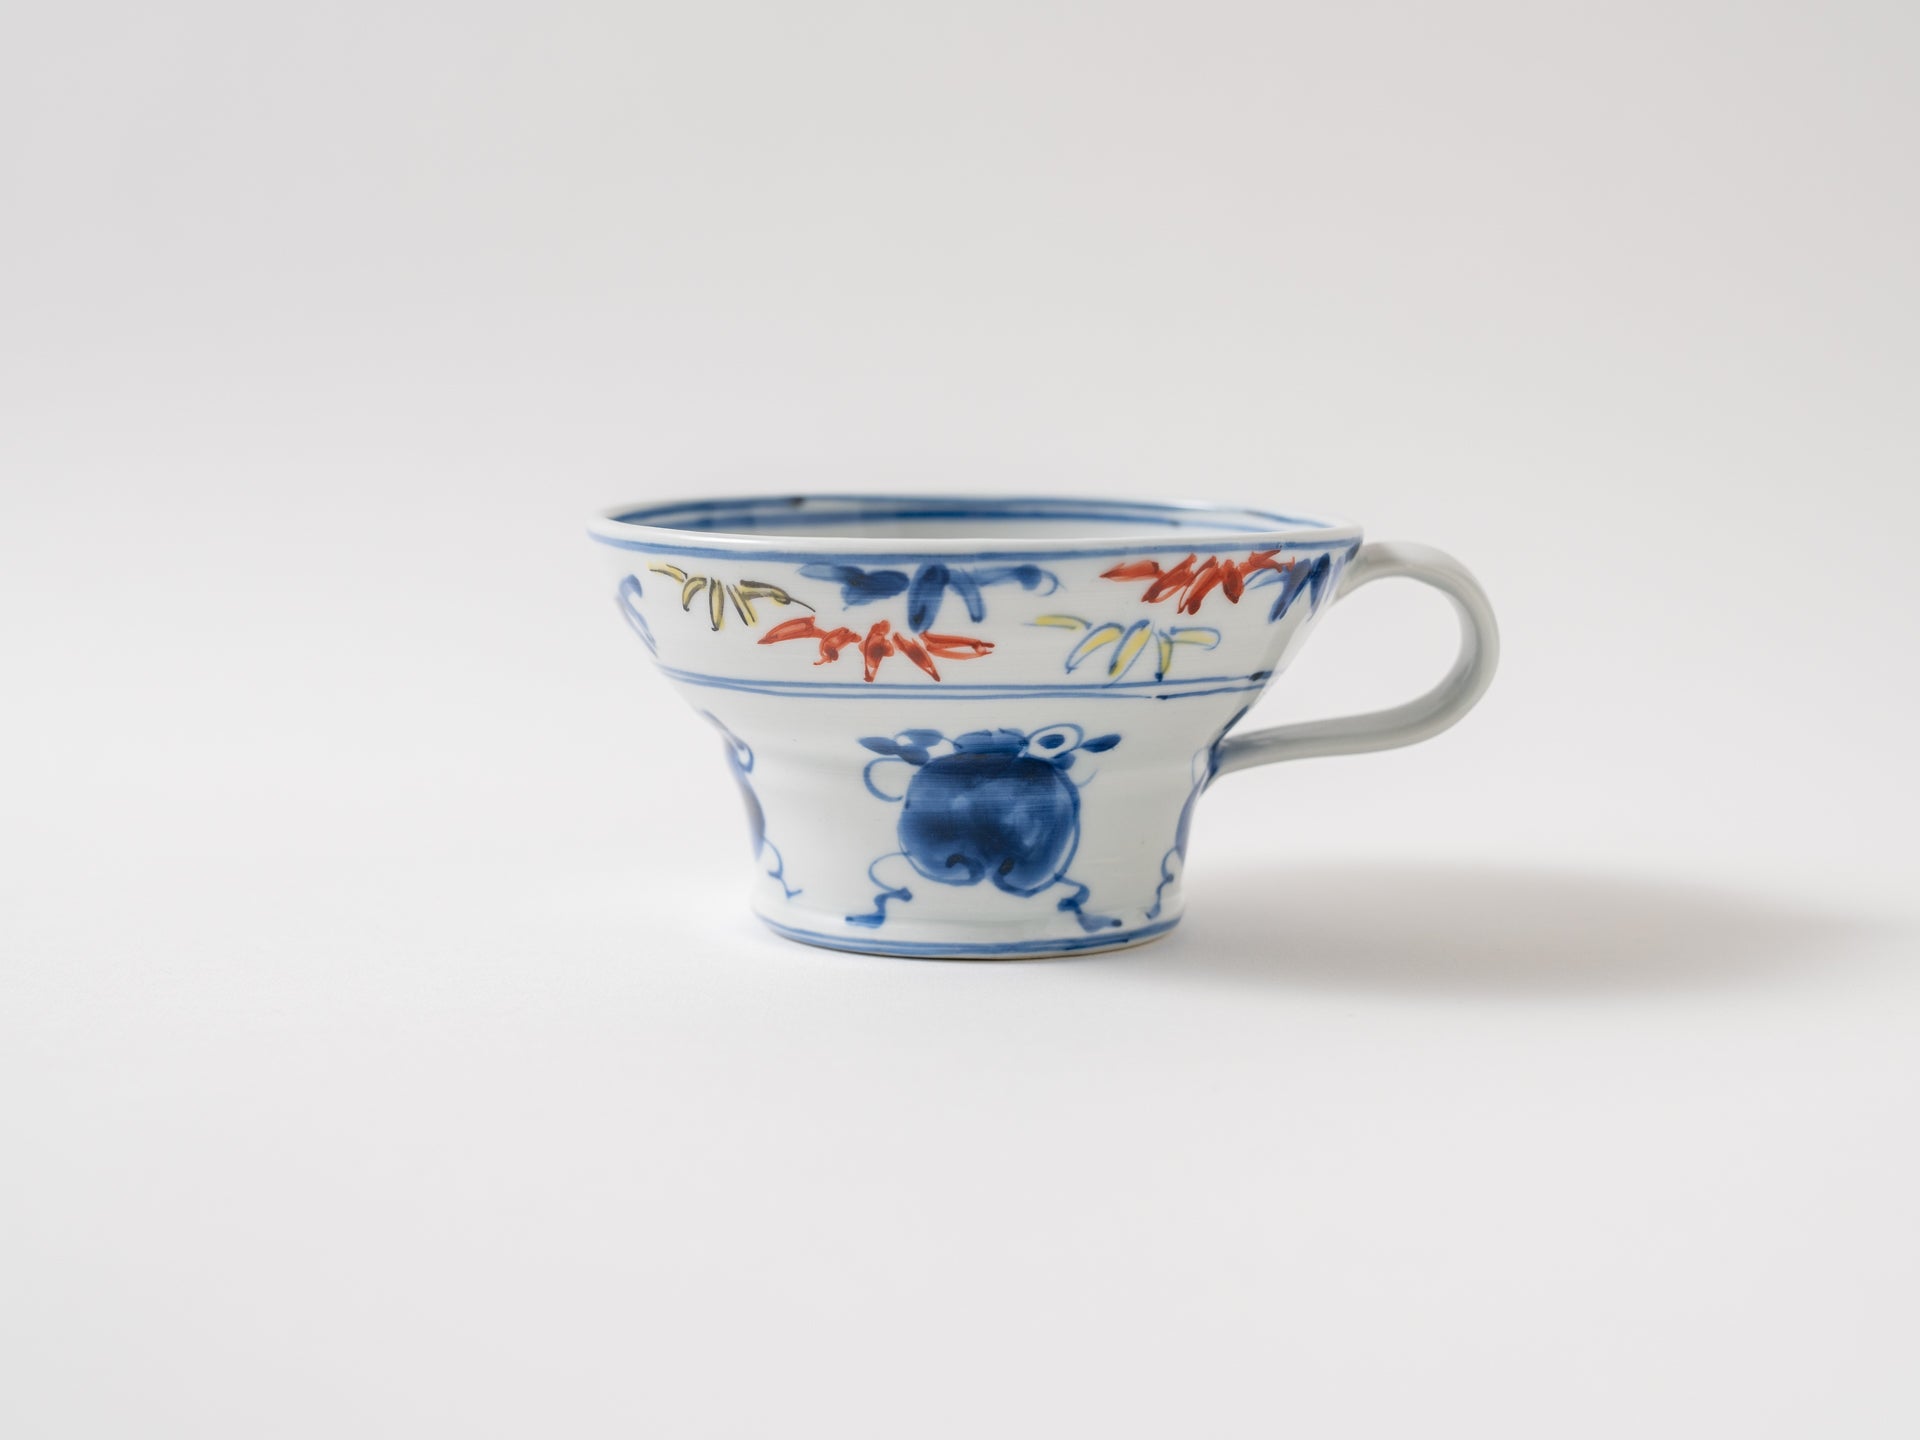 Treasure-filled flat mug [Teiichiro Matsuo]